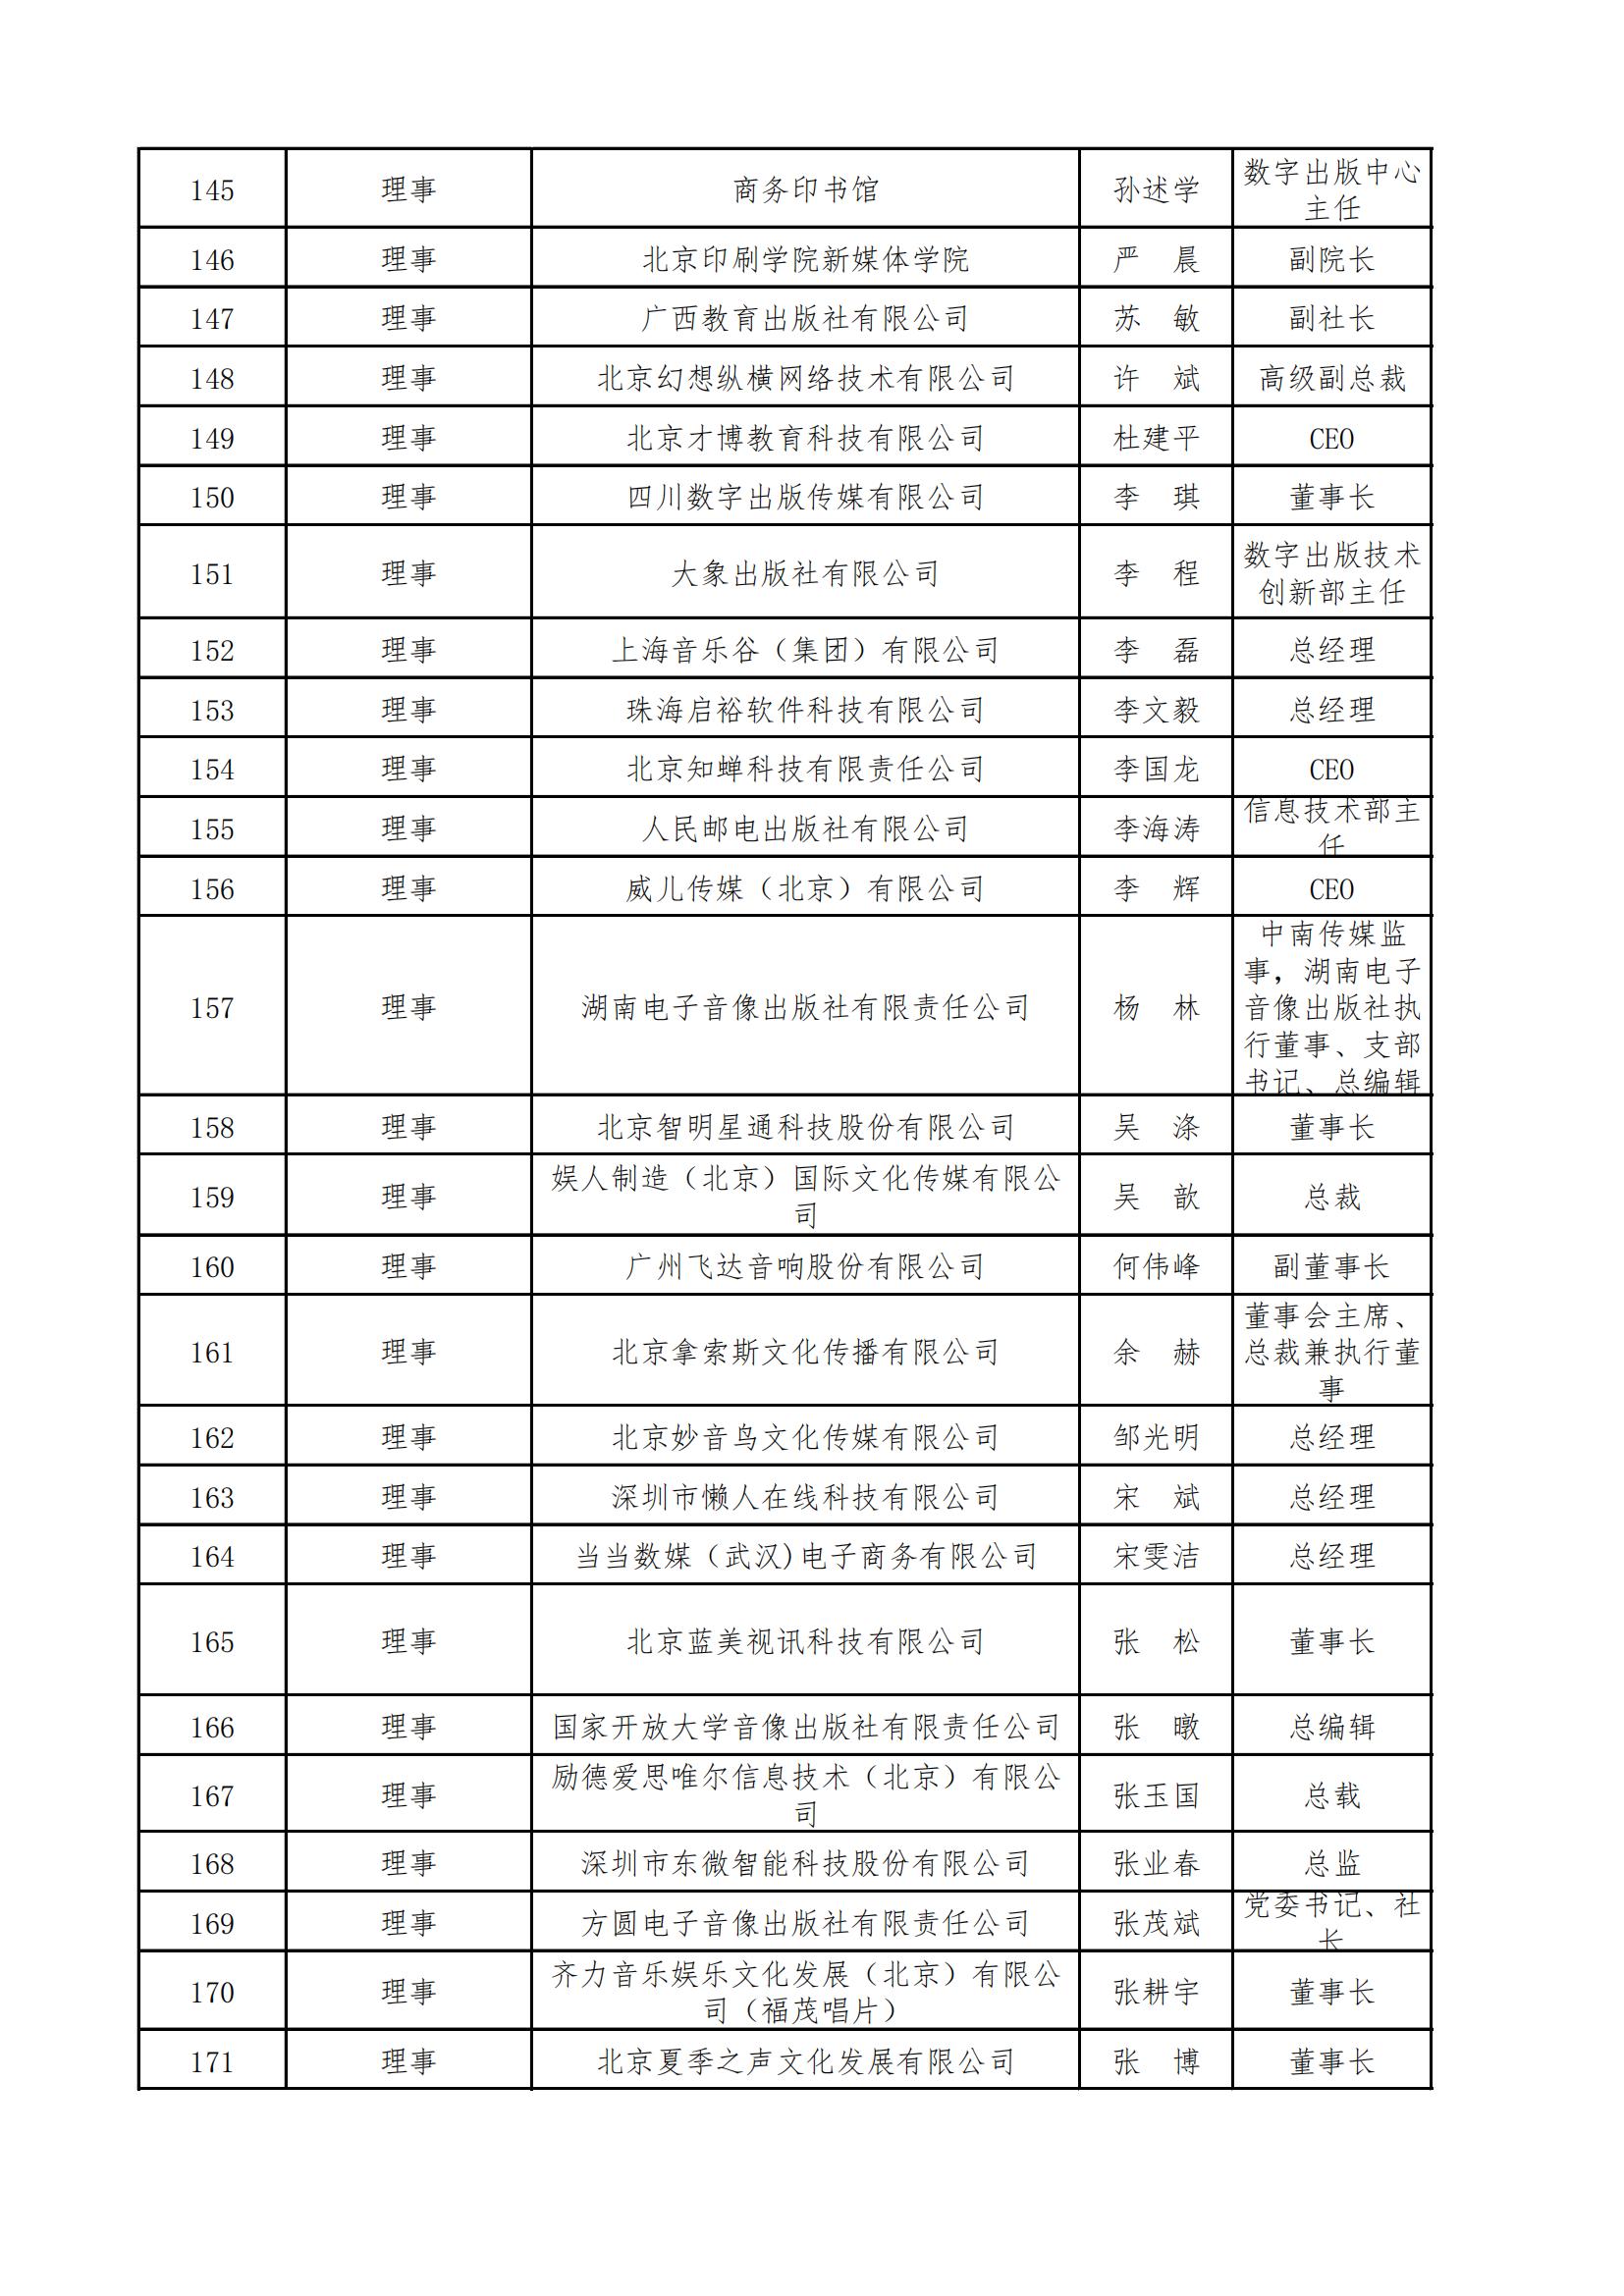 中国音像与数字出版协会第五届理事会名录_05.jpg